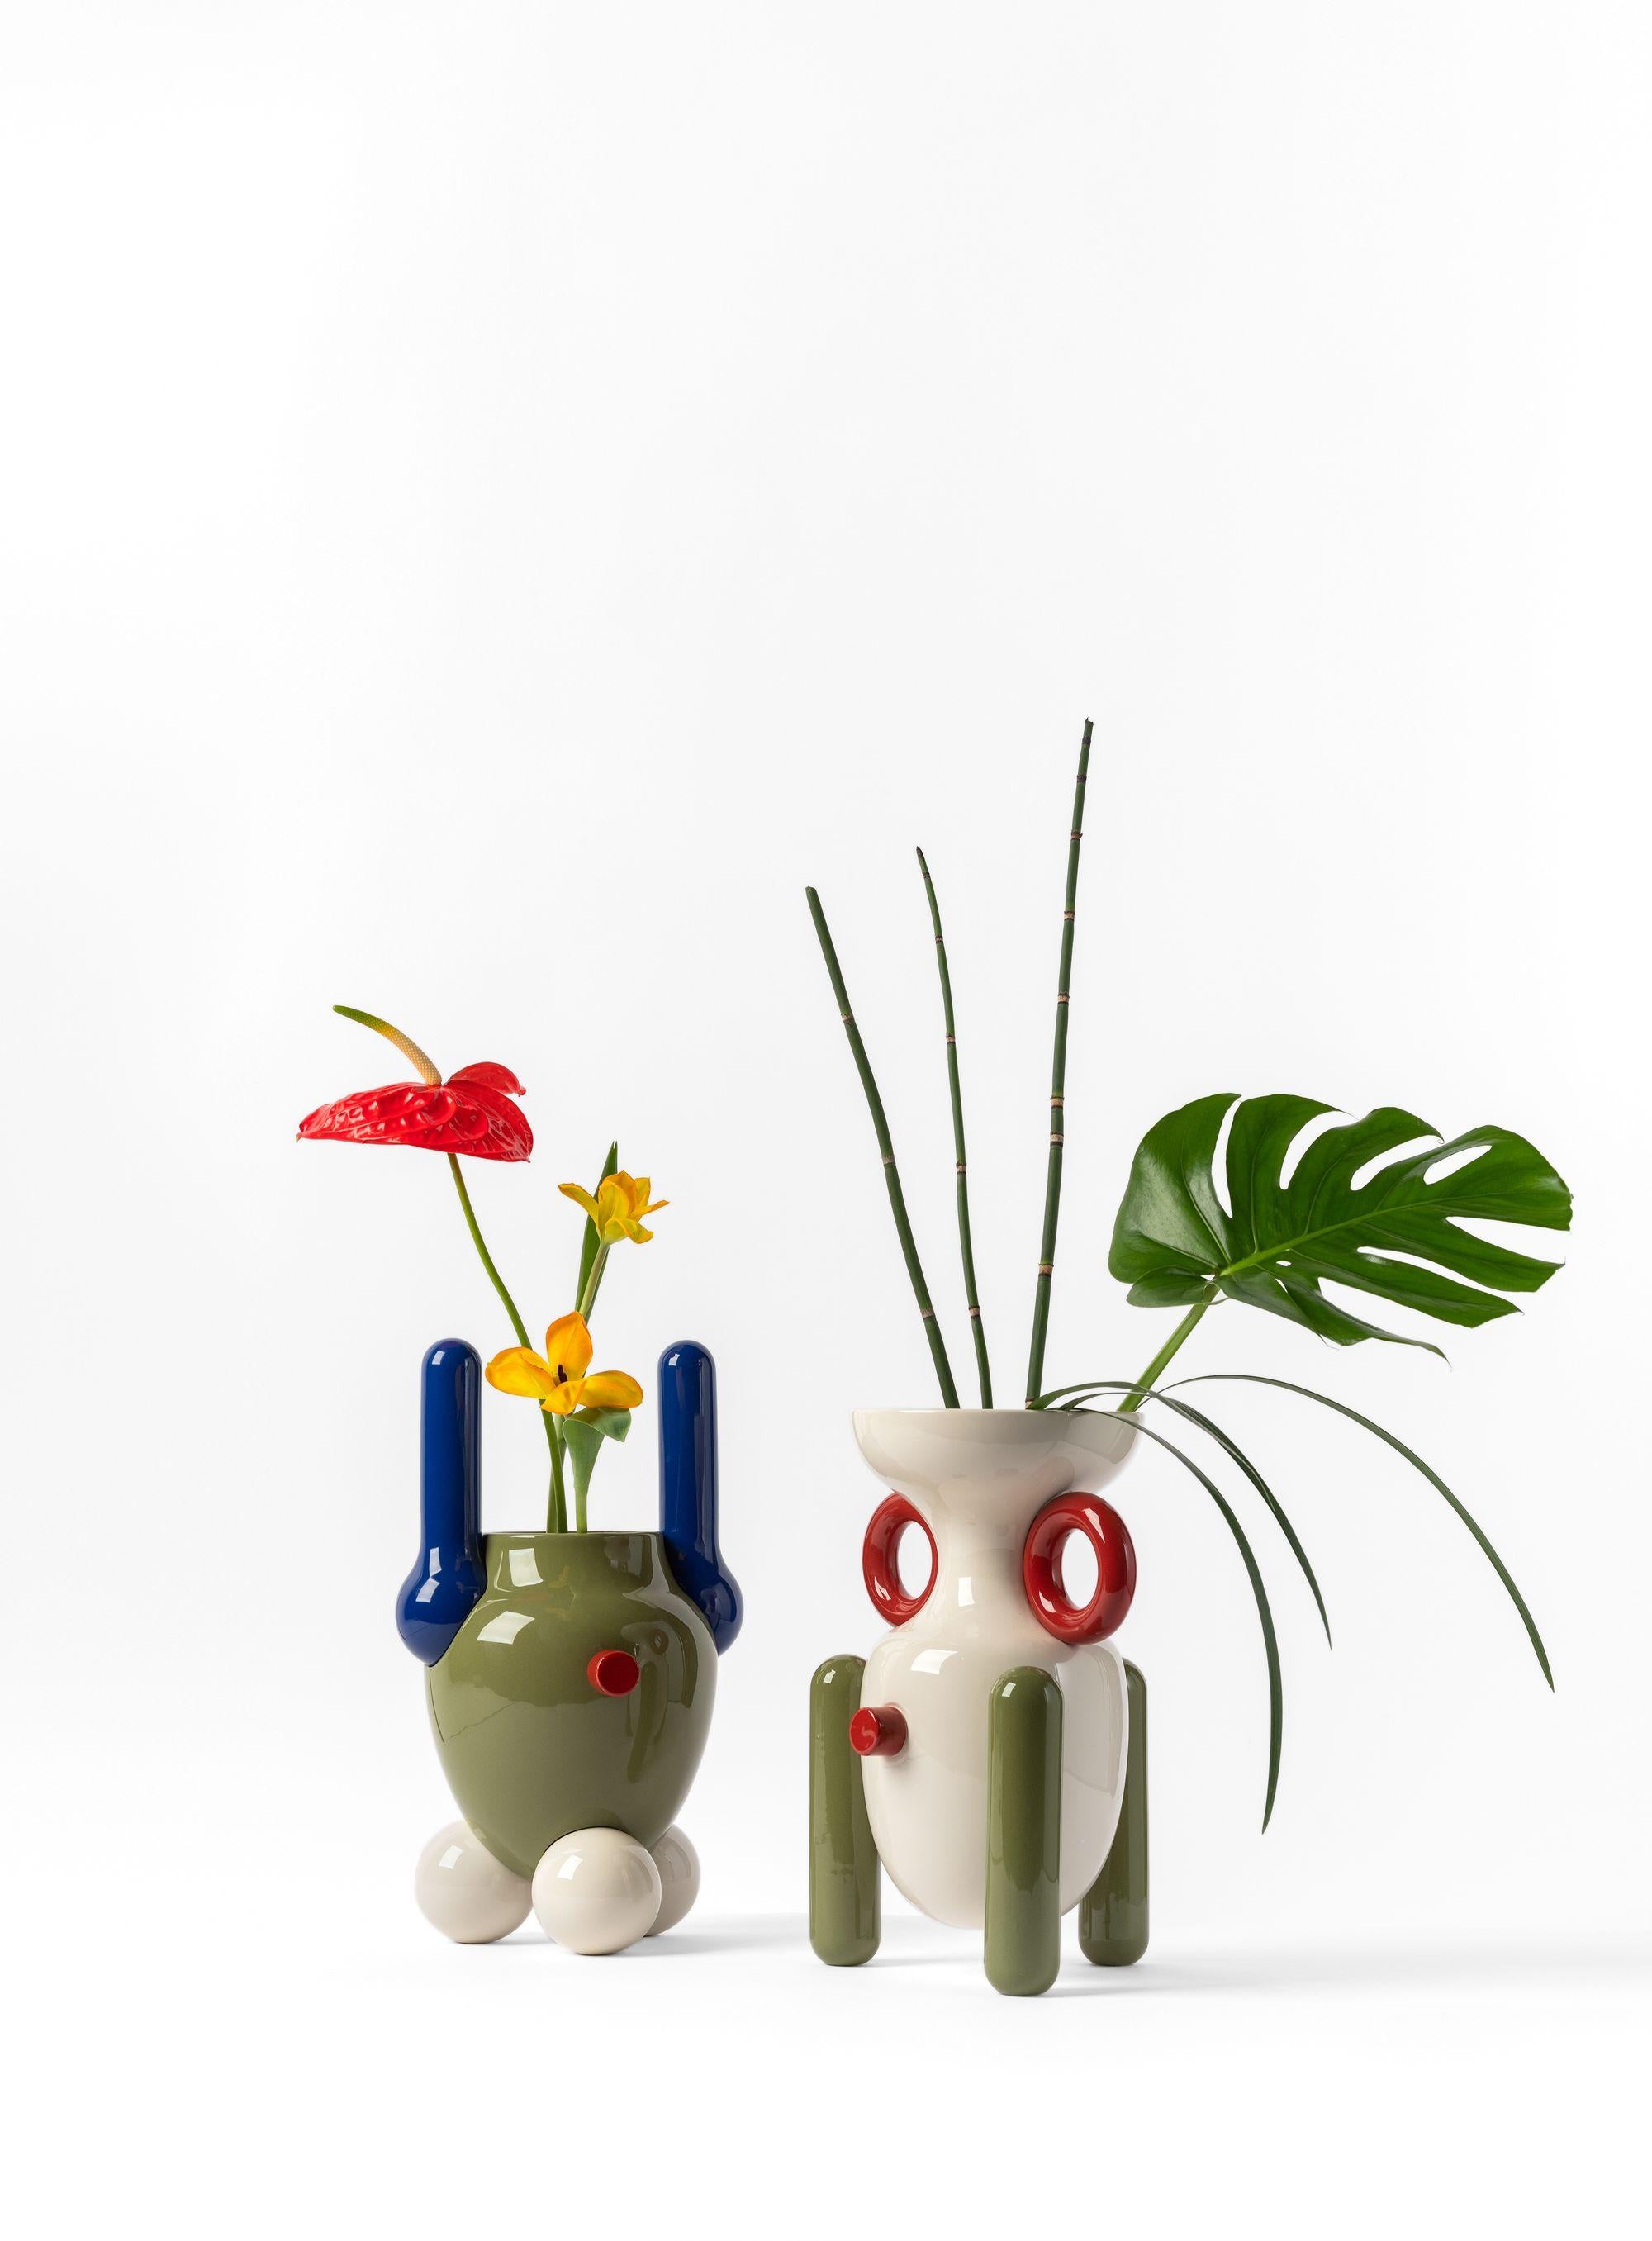 Modern Contemporary Glazed Ceramic Explorer Vase No.2 by Jaime Haydon white, red, green For Sale